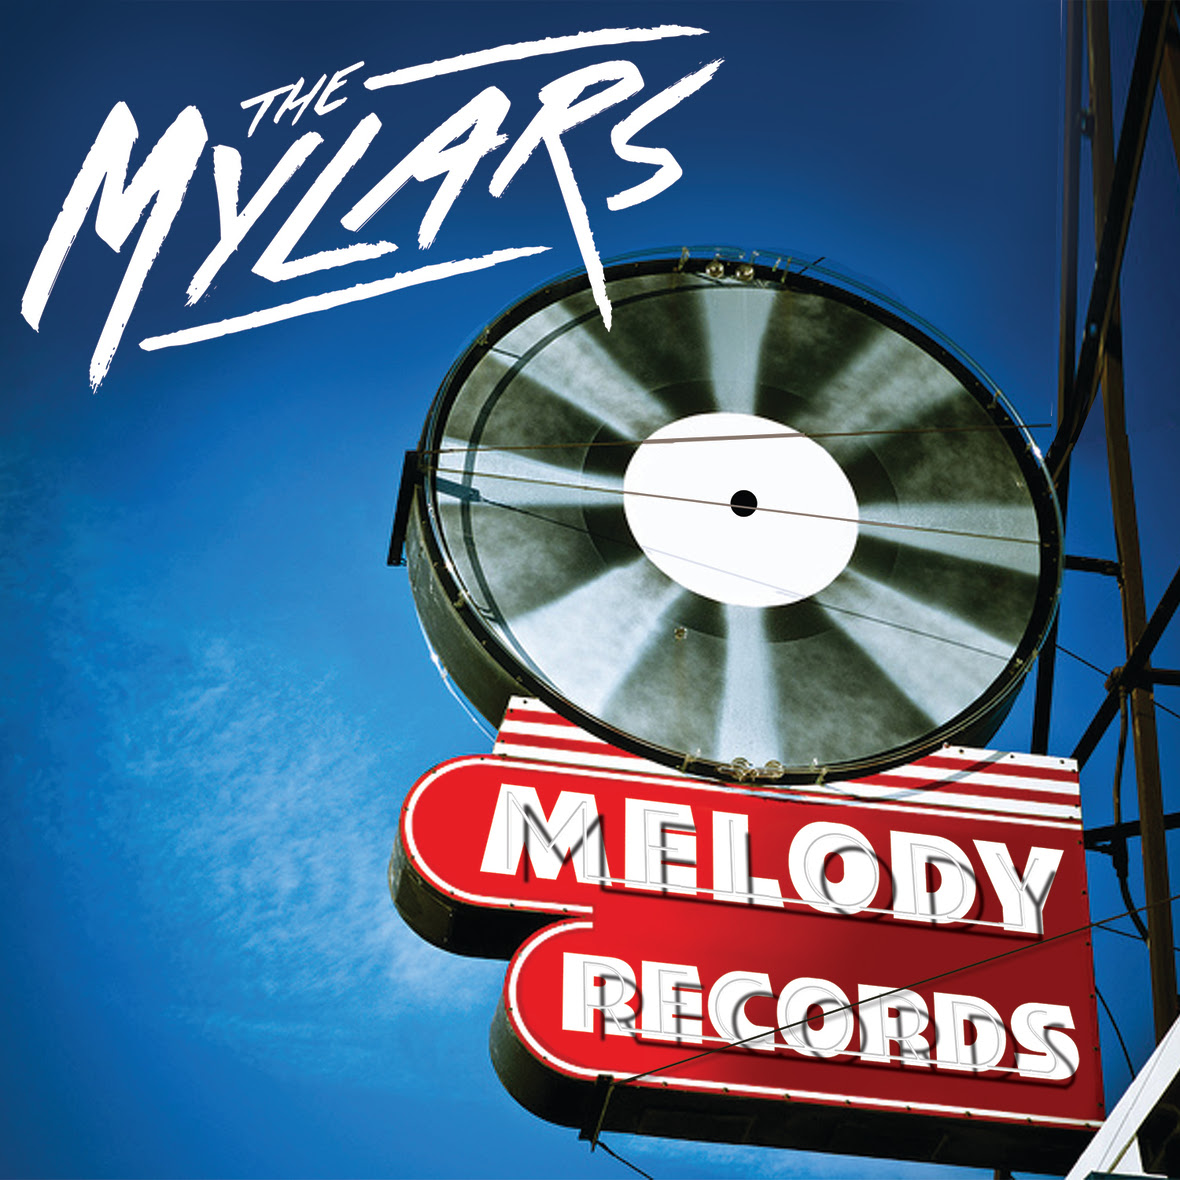 MELODYRECORDS COVER 1500x1500